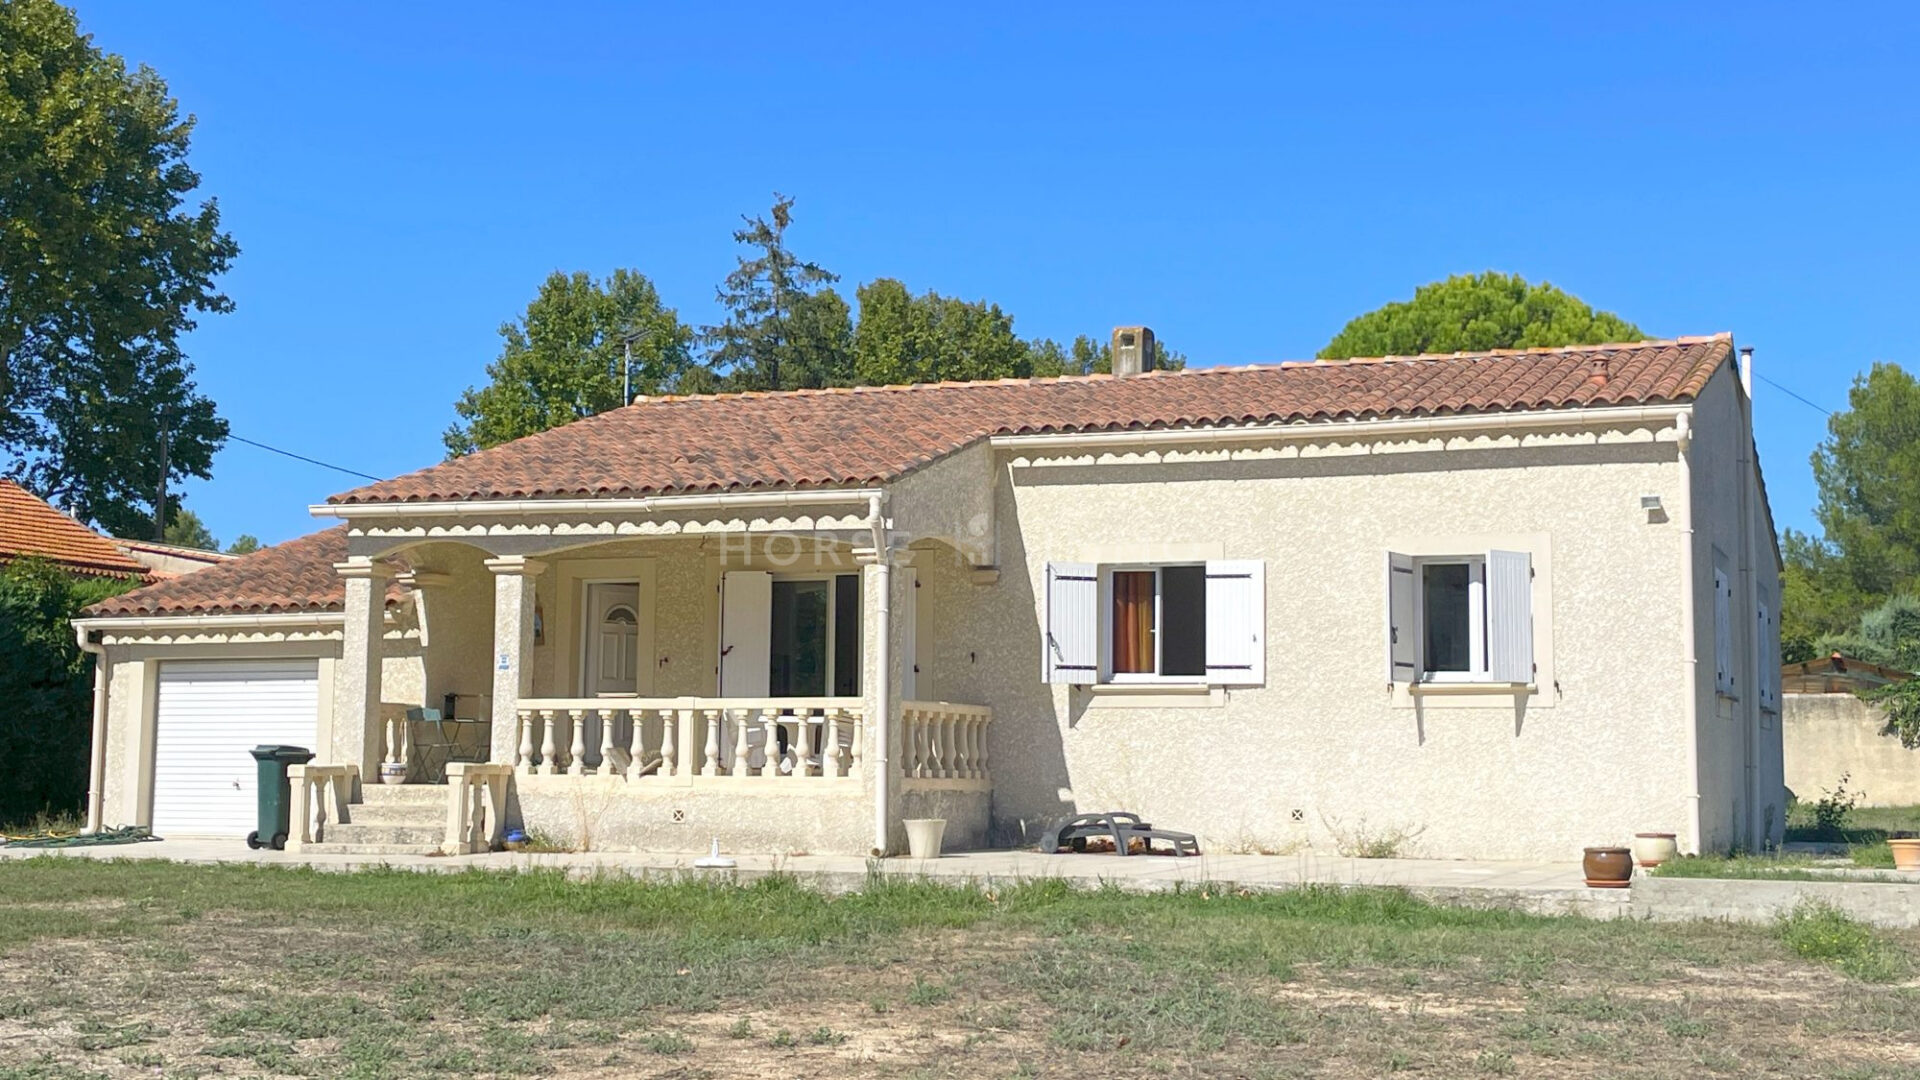 1696335225 VM2130 11 original 1920x1080 - Proche Salon de Provence - Domaine agricole sur près de 3 hecta